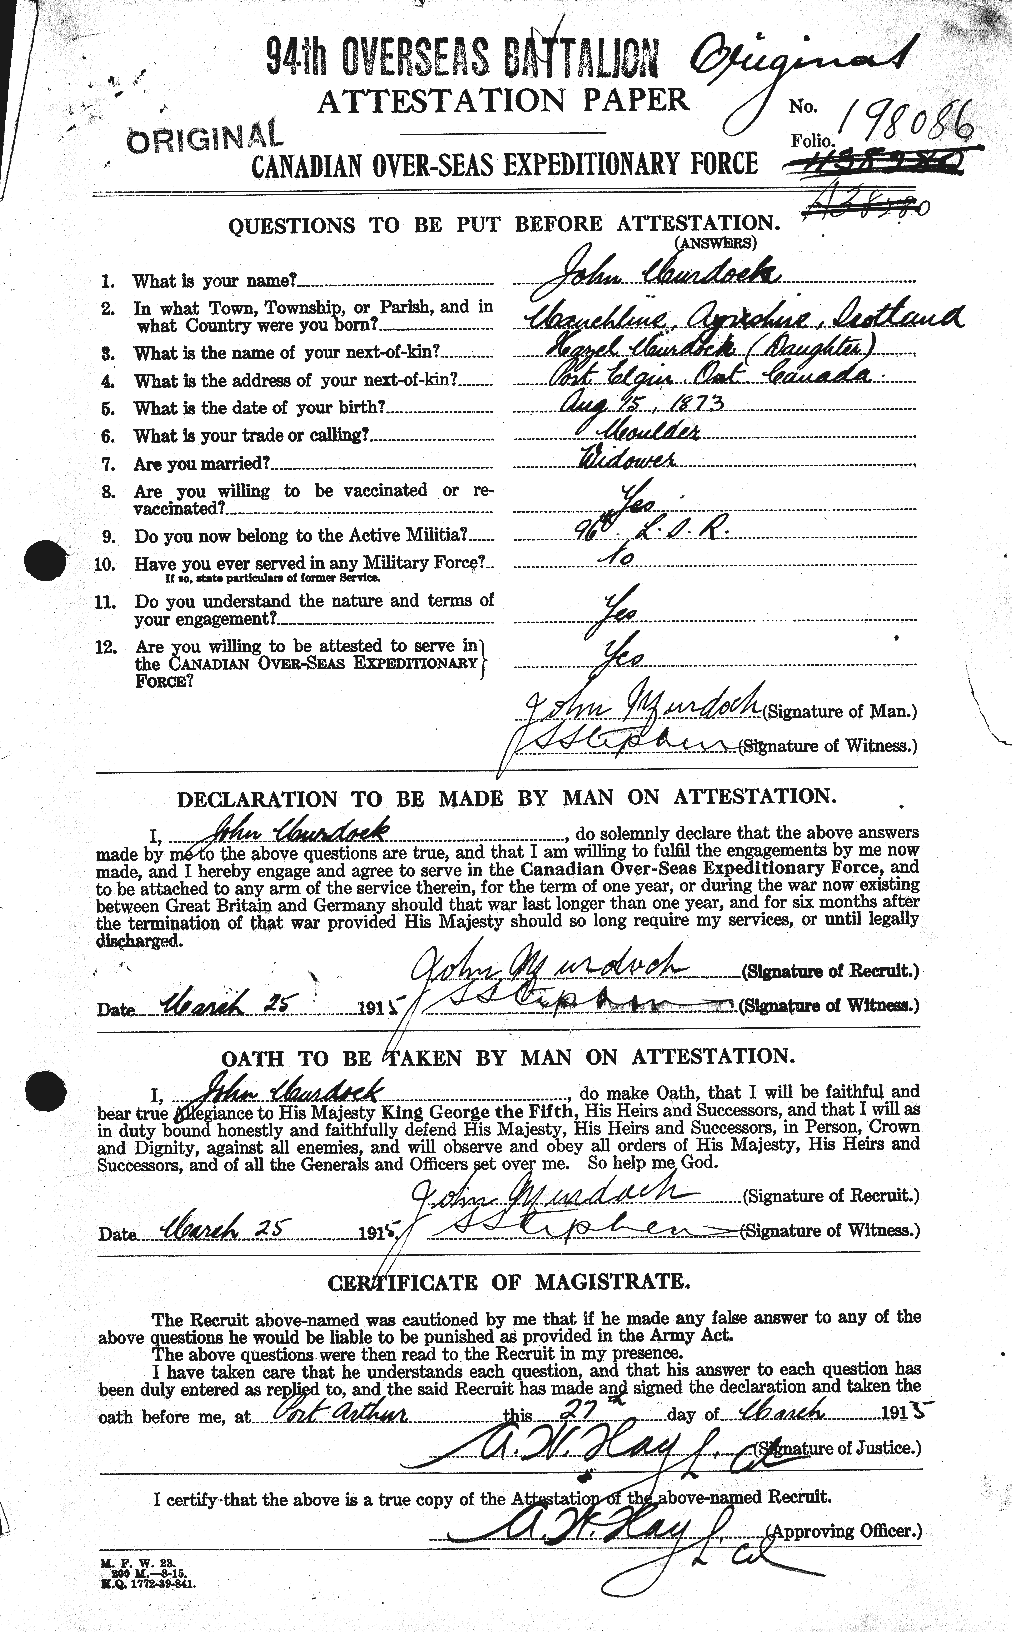 Dossiers du Personnel de la Première Guerre mondiale - CEC 510856a